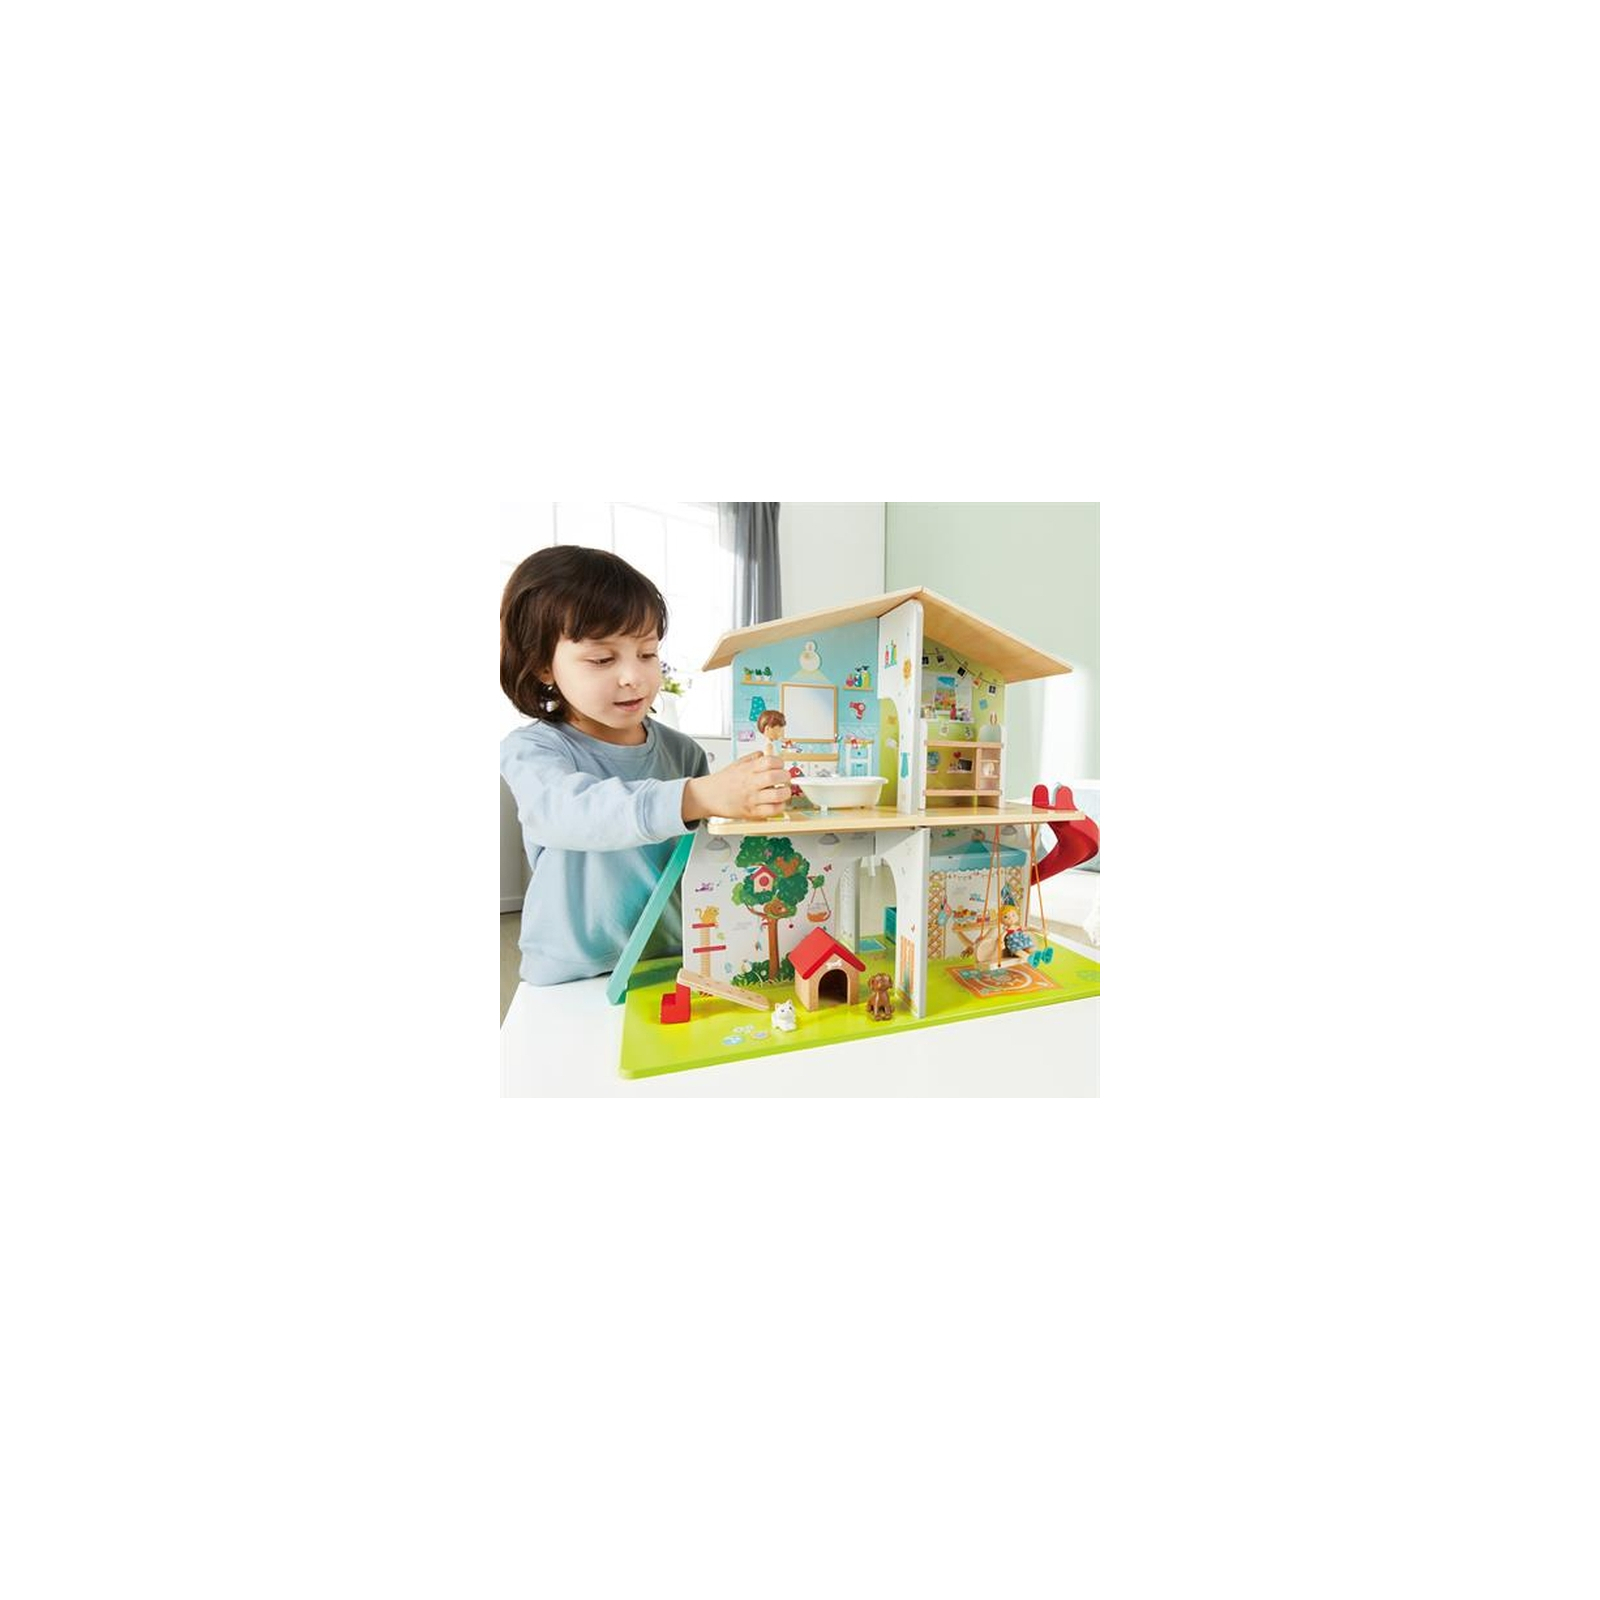 Игровой набор Hape Кукольный дом с горкой, мебелью и аксессуарами (E3411) изображение 6